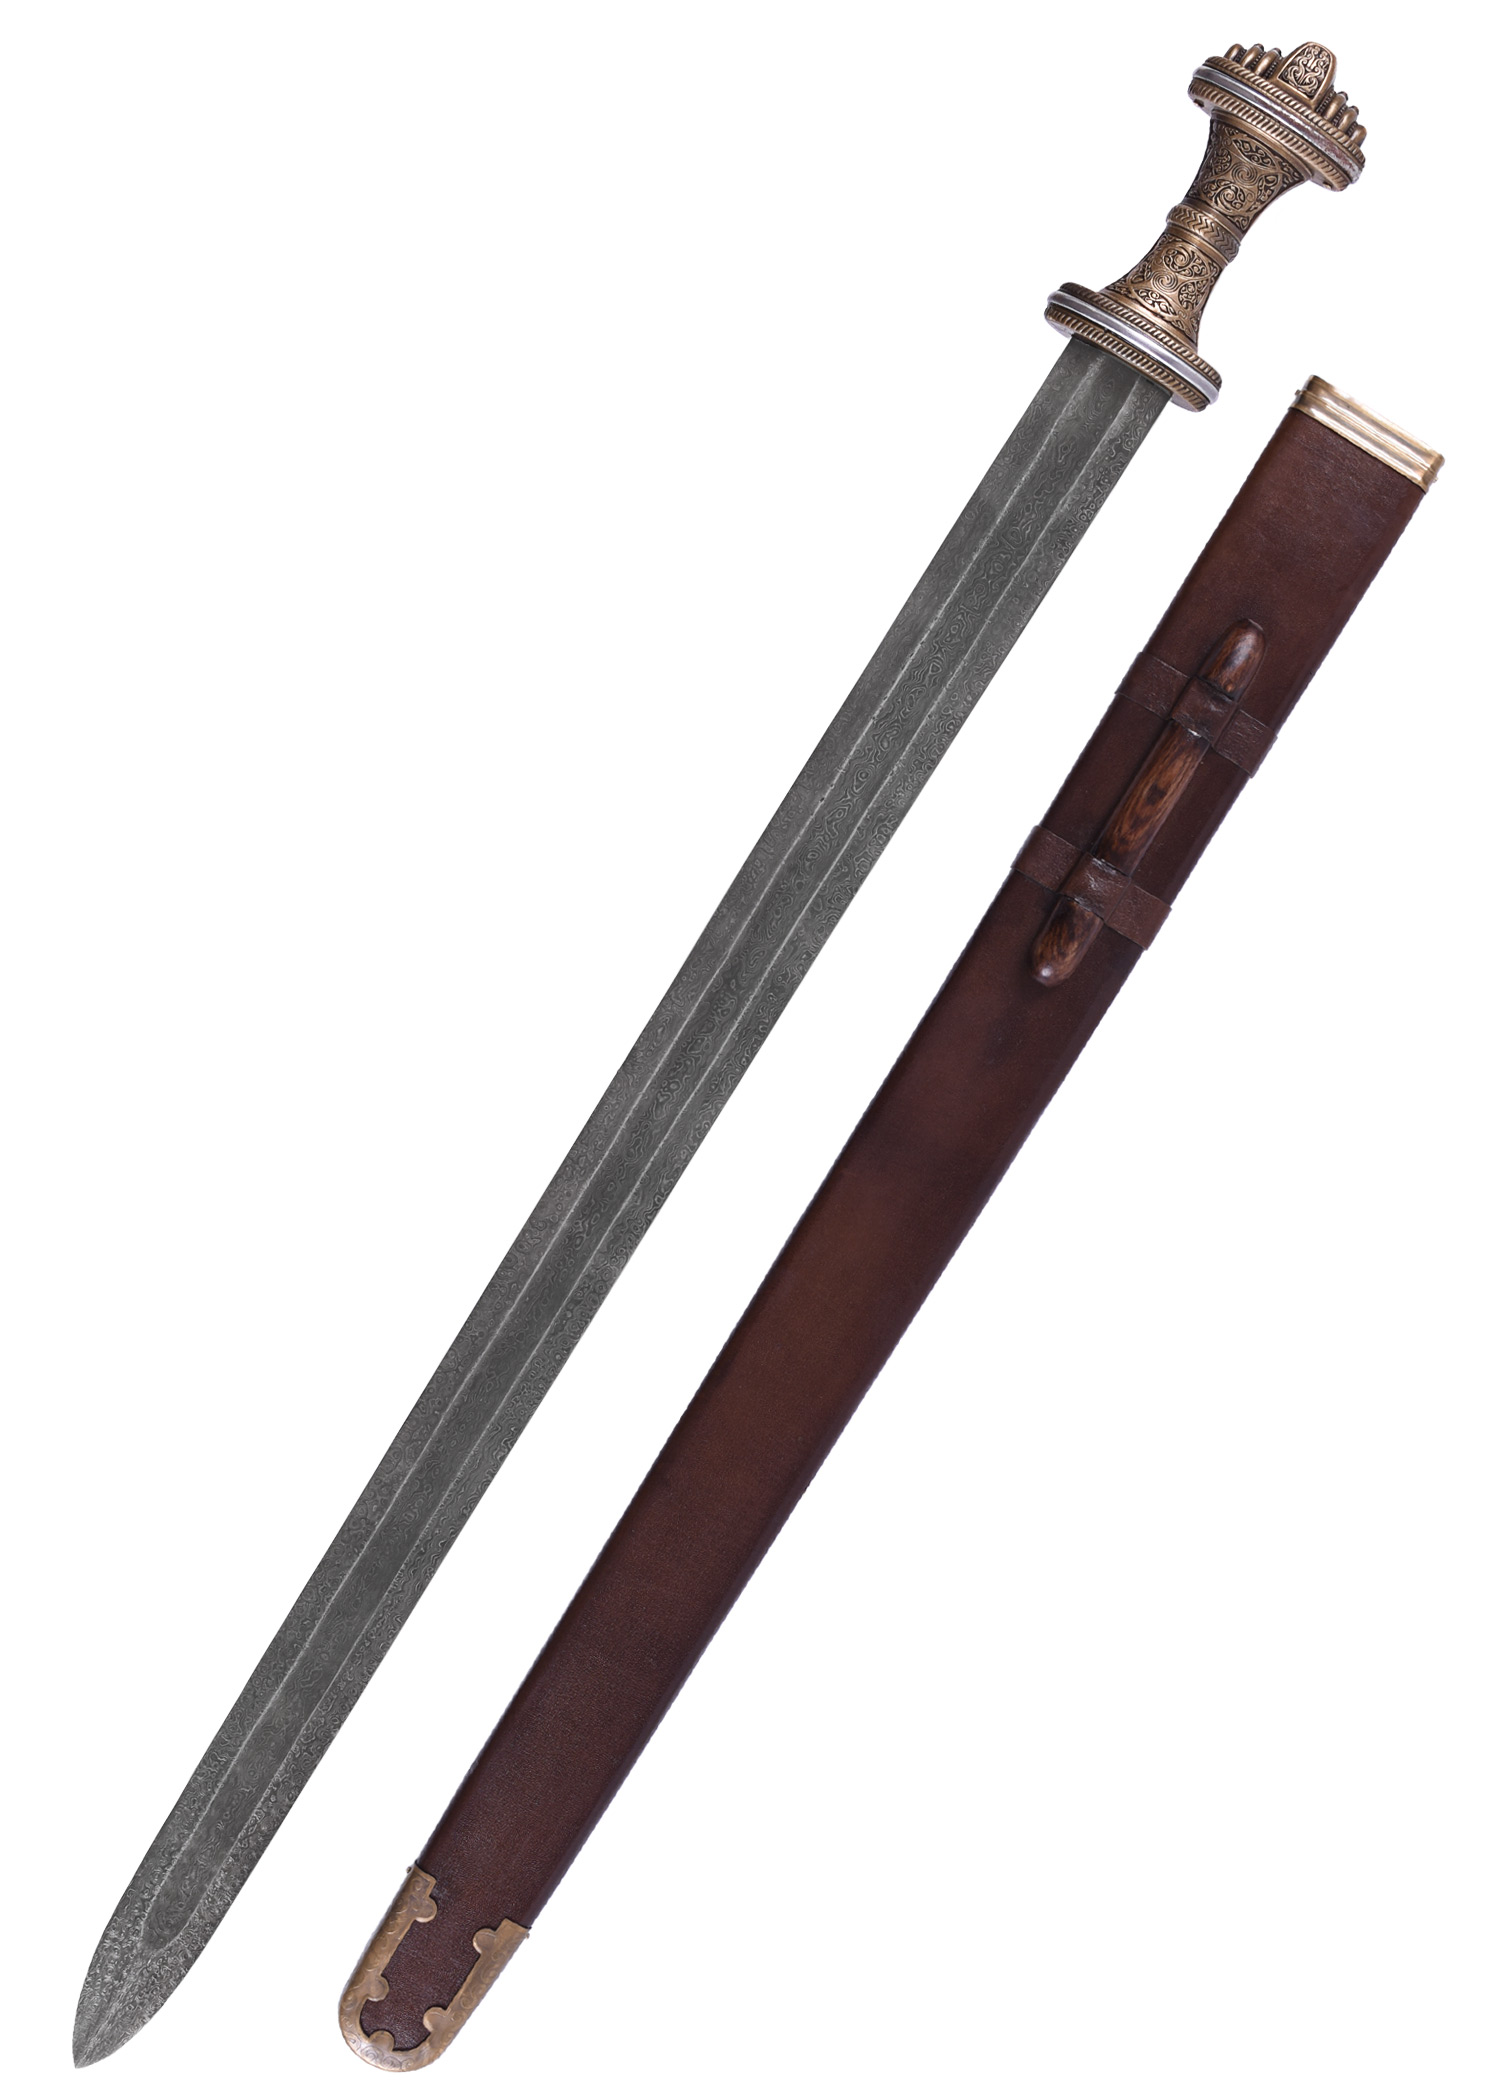 Épée barbare médiévale - lame en acier de Damas de 93.98 cm - Epées  (11103990)